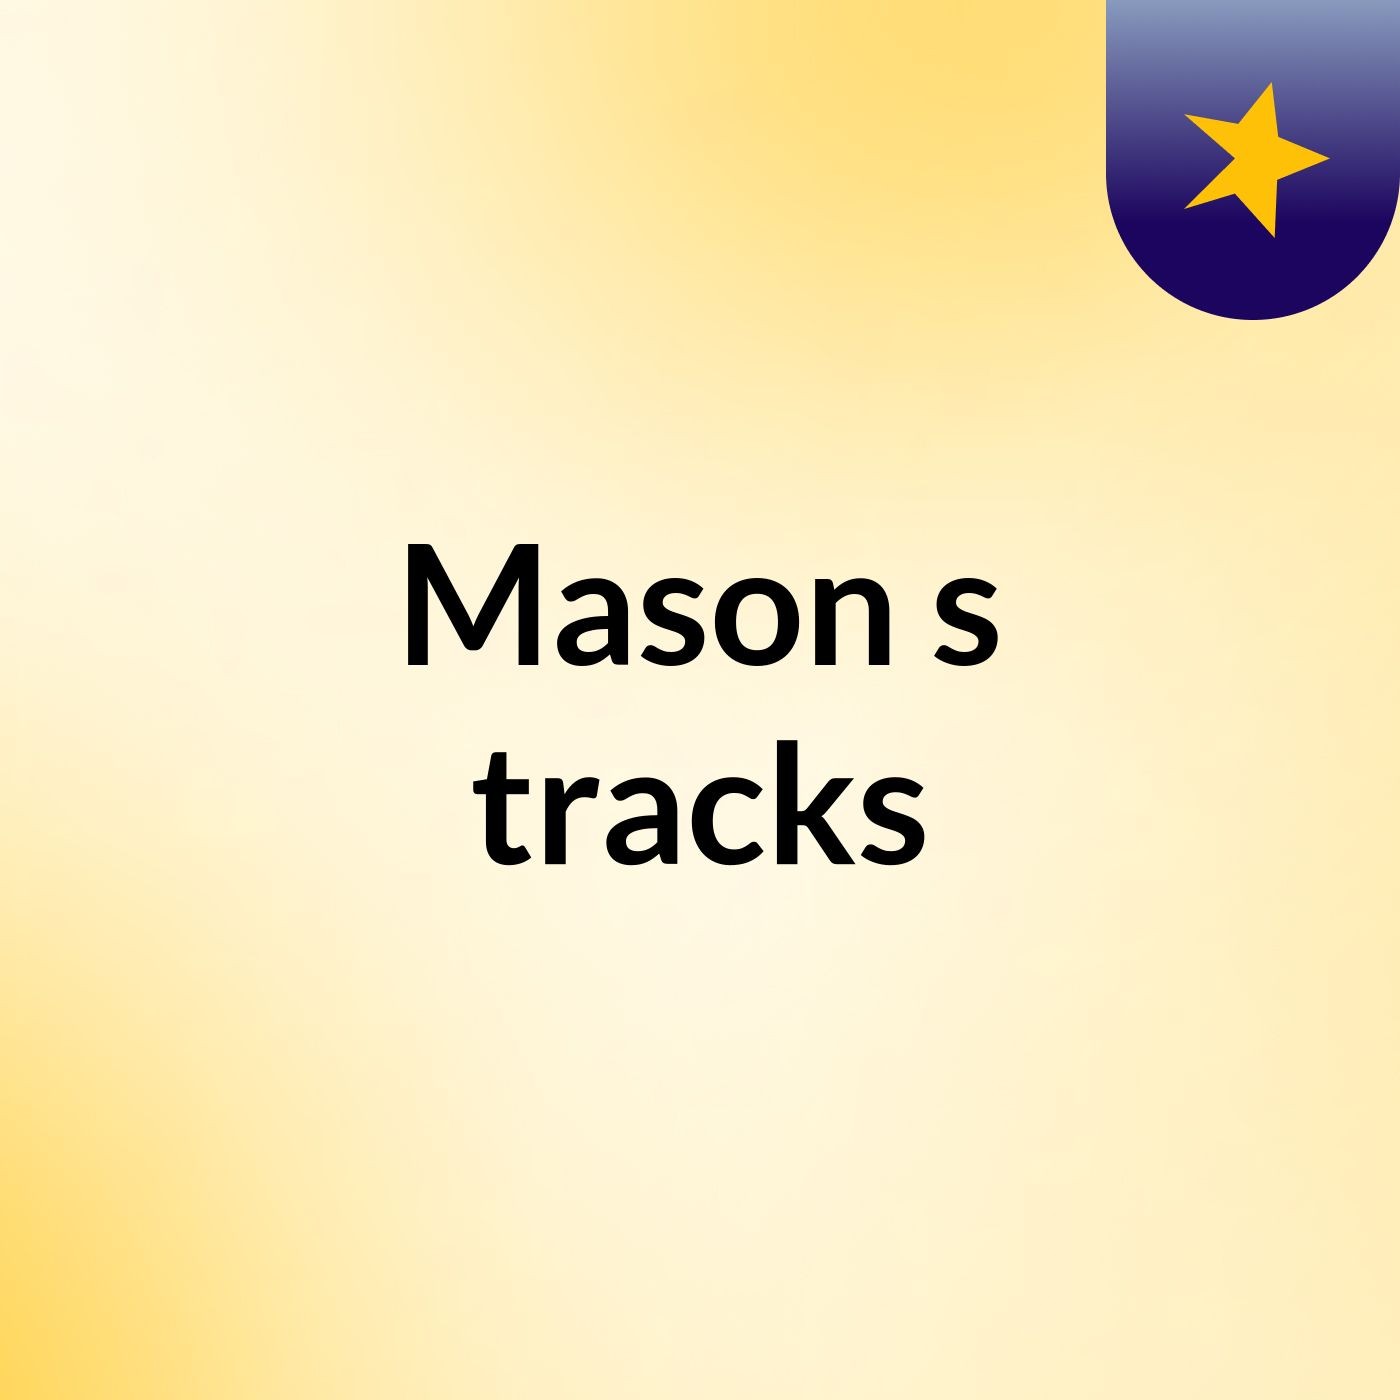 Mason's tracks